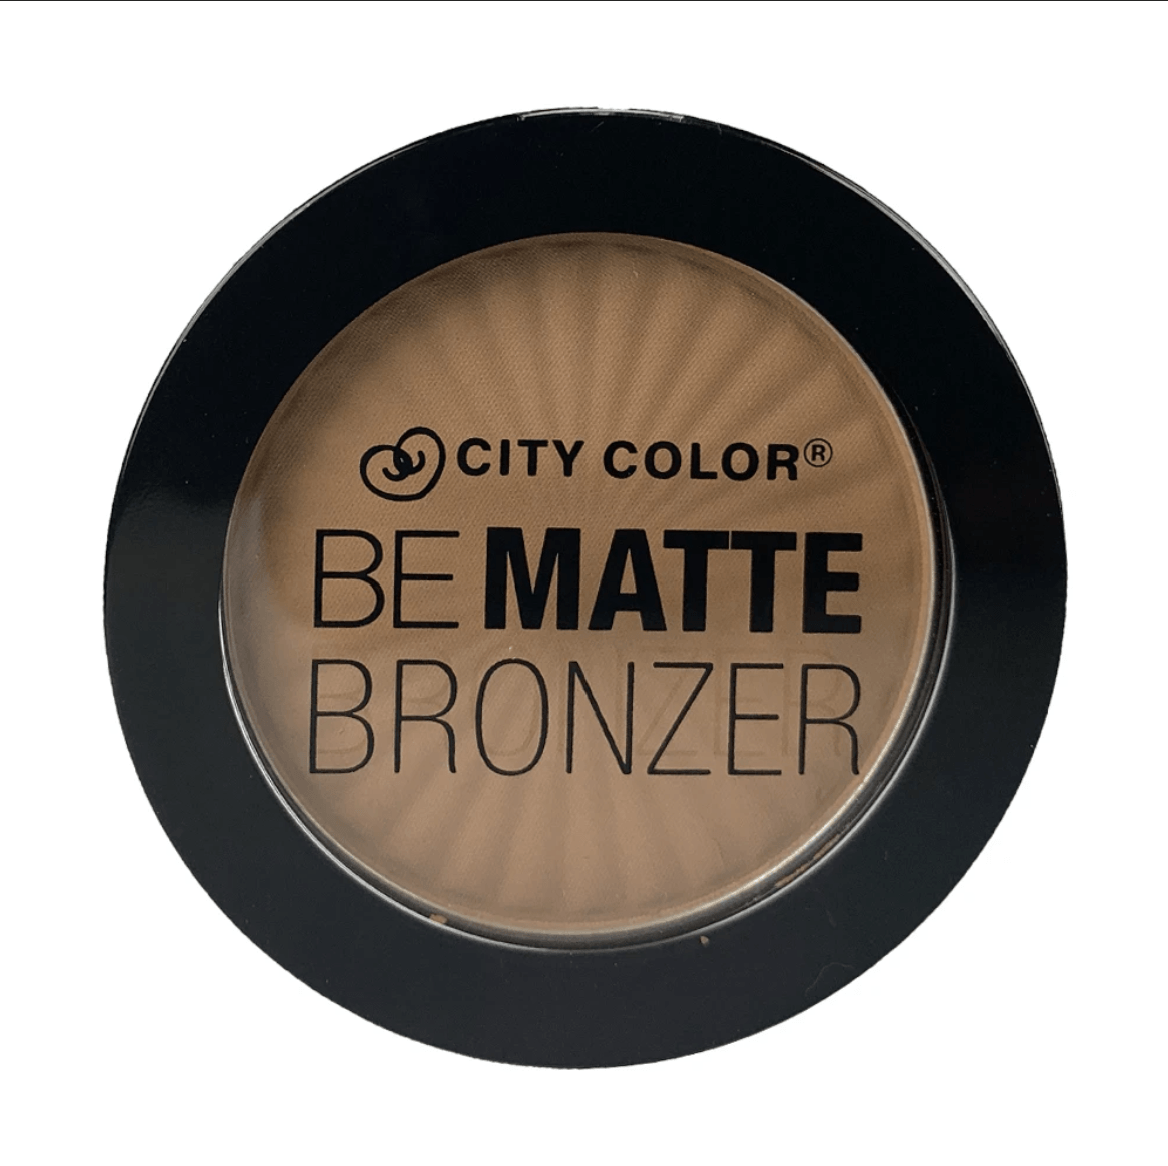 Glamour Us_City Color_Makeup_Be Matte Bronzer_Caramel Drizzle_C-0034-1